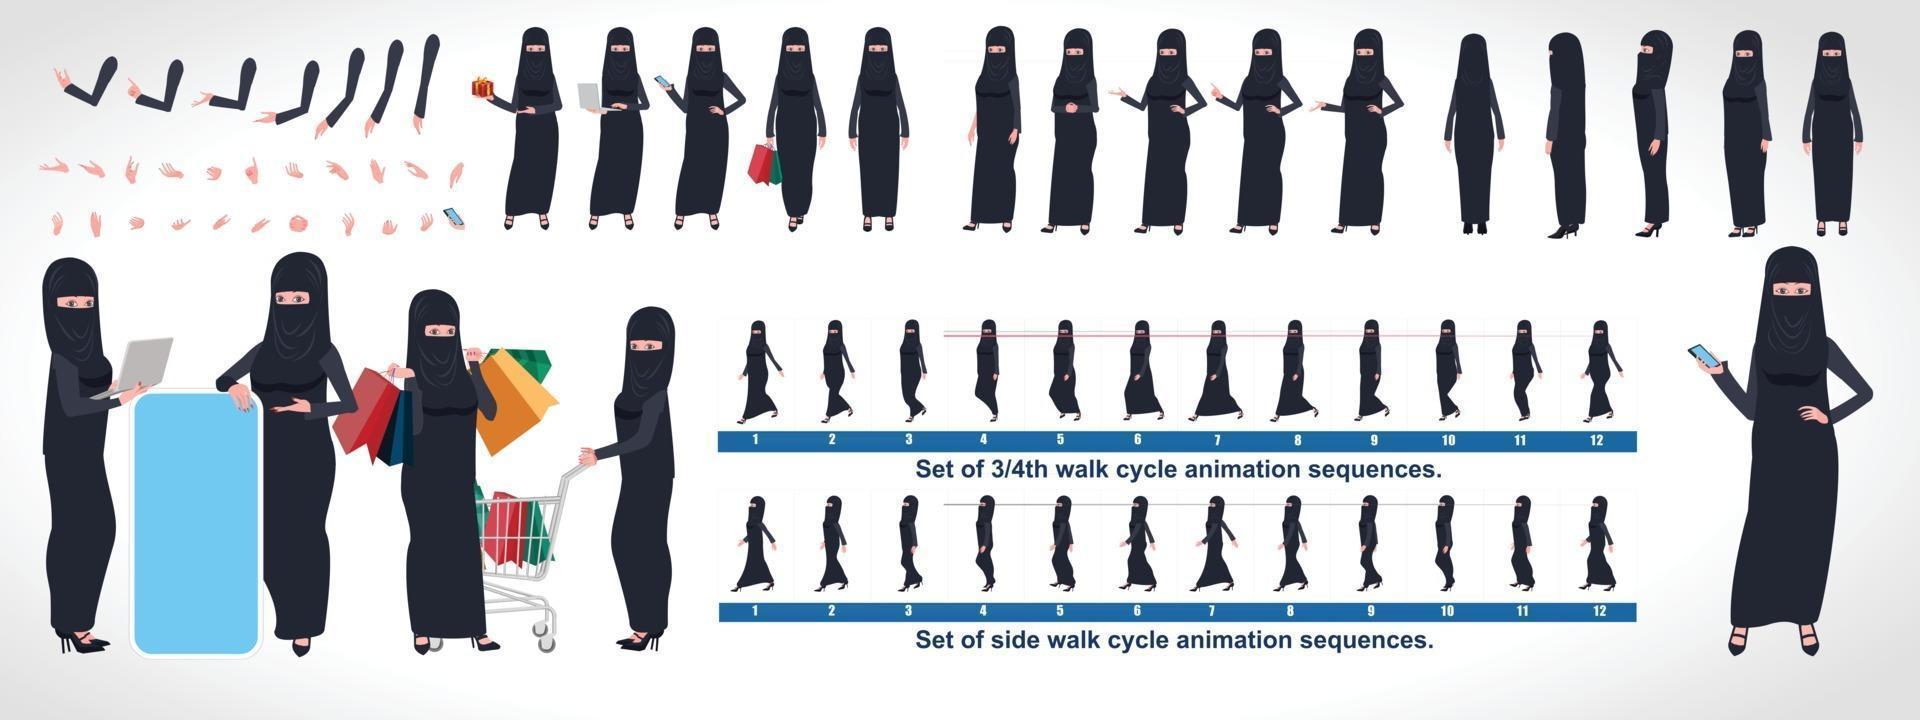 foglio del modello di disegno del personaggio della ragazza islamica con animazione del ciclo di camminata disegno del personaggio della ragazza lato anteriore vista posteriore e animazione esplicativa pone il set di caratteri con varie viste e sincronizzazione labiale vettore